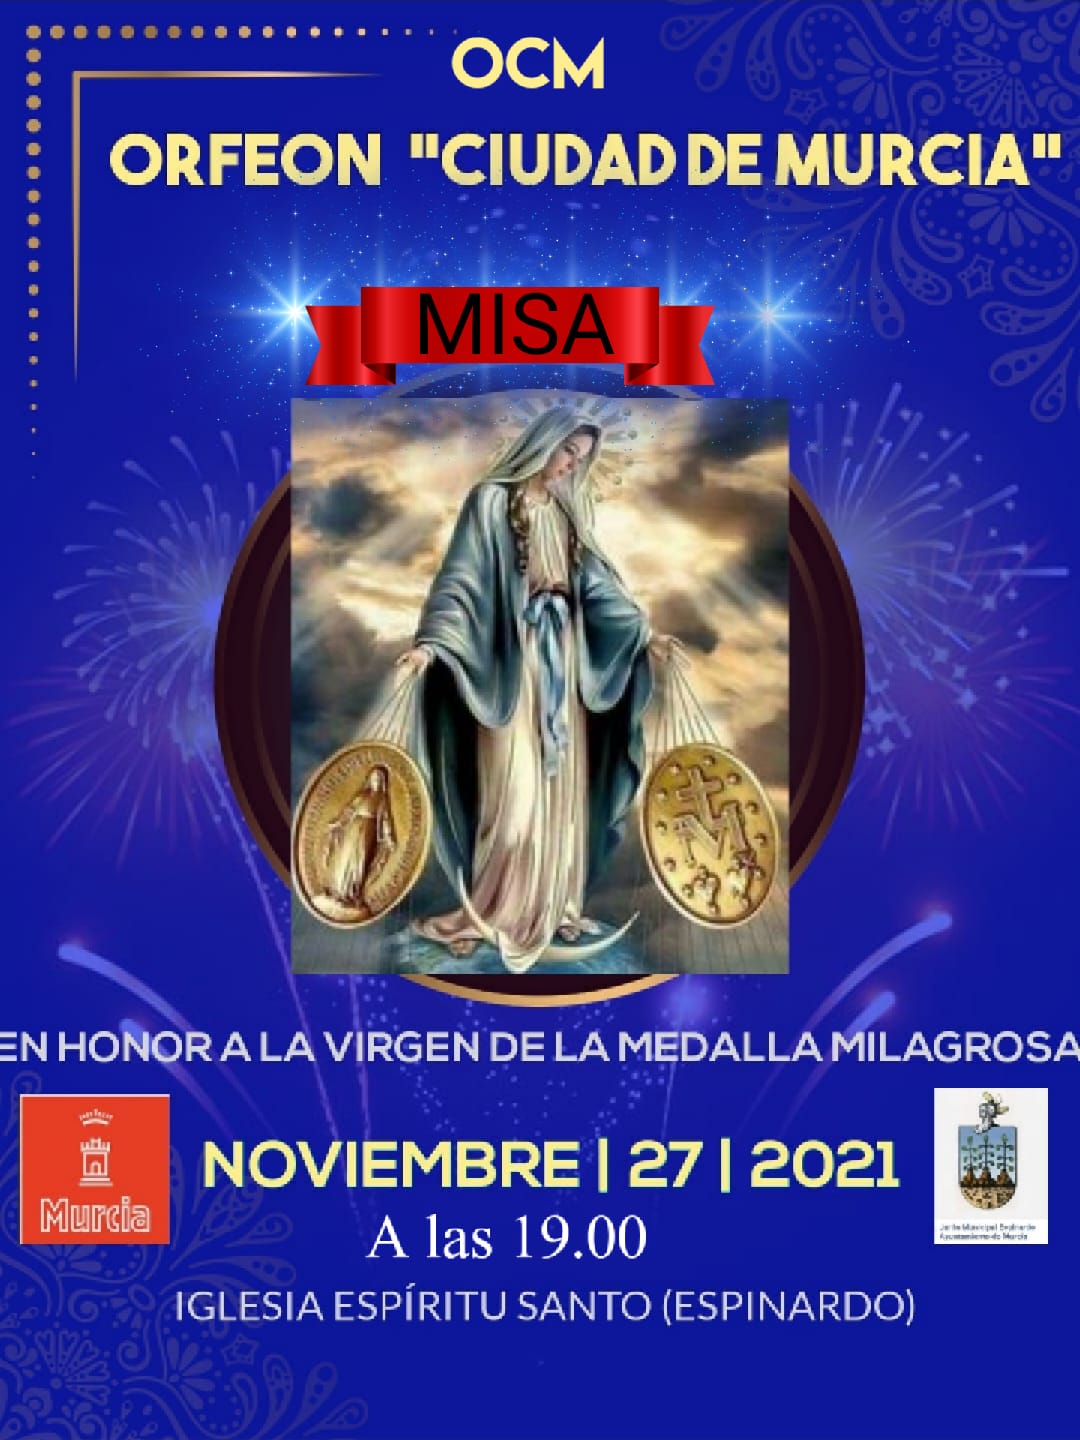 2021-11-27 Cartel Orfeón Ciudad de Murcia Misa Espinardo